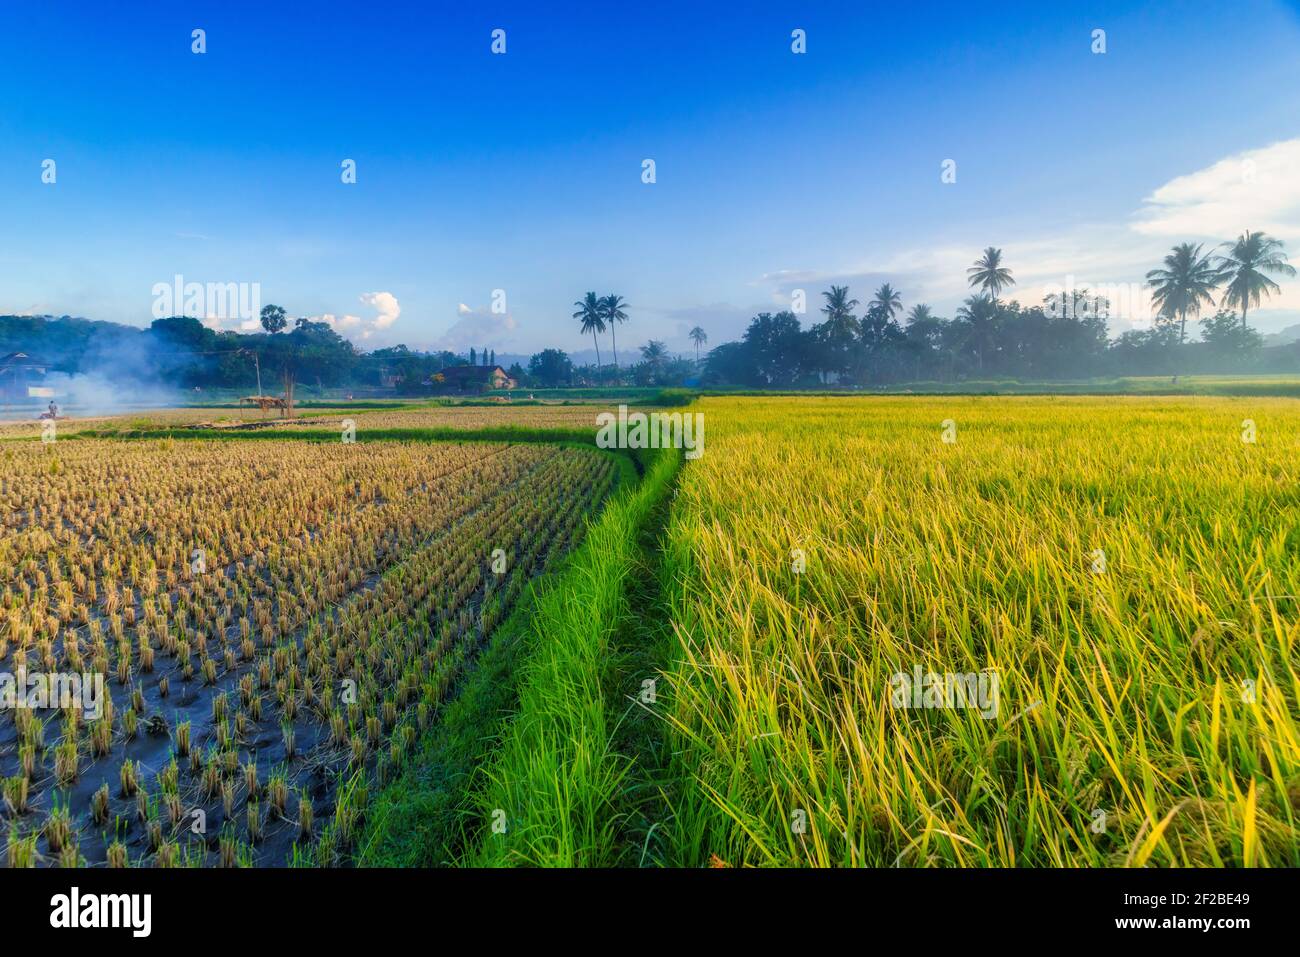 Personnes travaillant dans des rizières en milieu rural, Sumbawa, Nusa Tenggara Ouest, Indonésie Banque D'Images